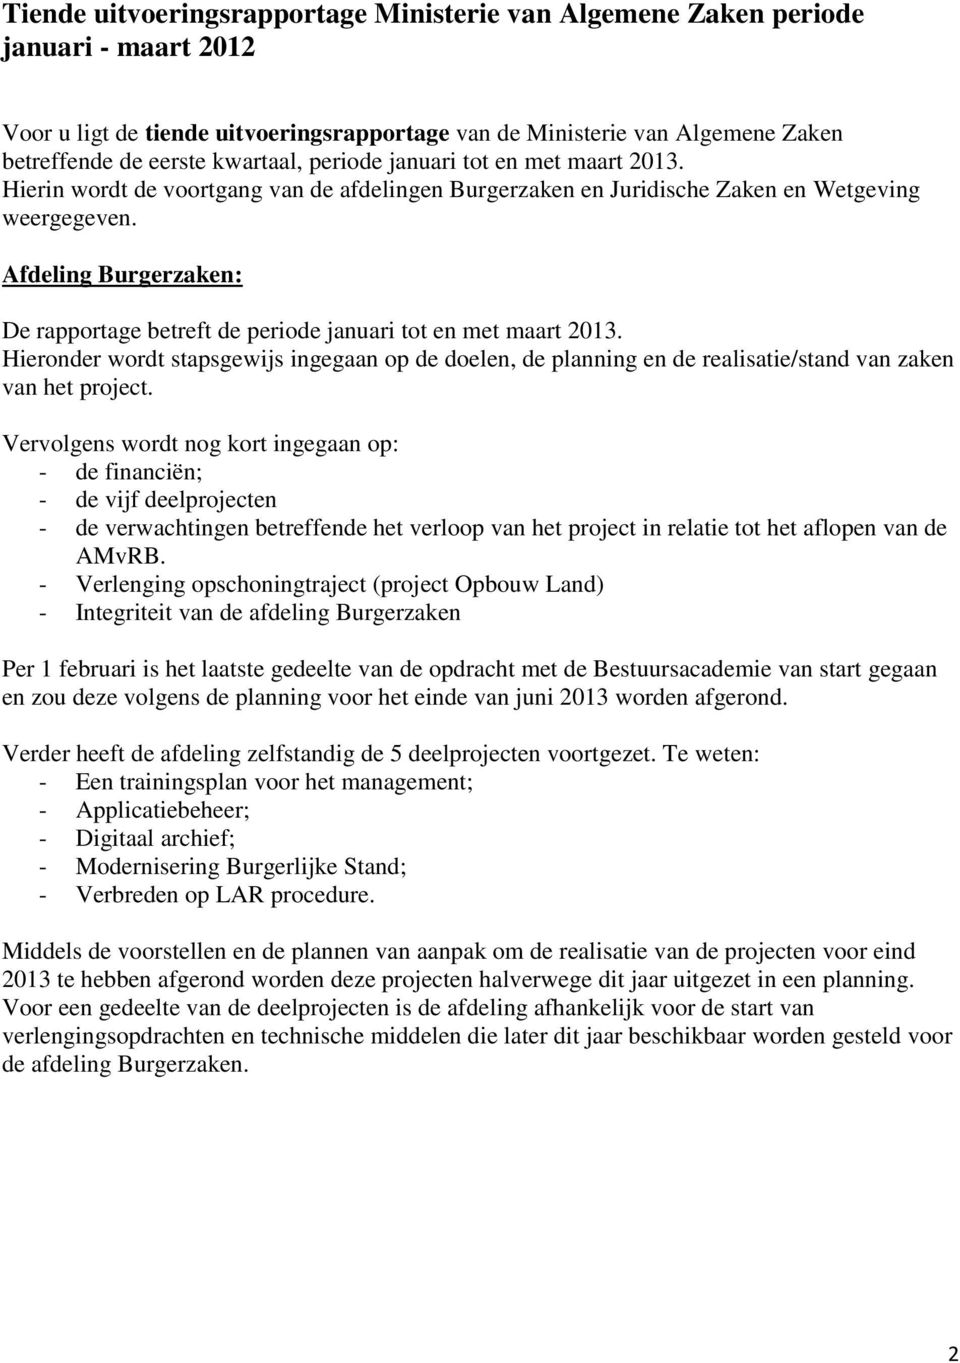 Afdeling Burgerzaken: De rapportage betreft de periode januari tot en met maart 2013. Hieronder wordt stapsgewijs ingegaan op de doelen, de planning en de realisatie/stand van zaken van het project.